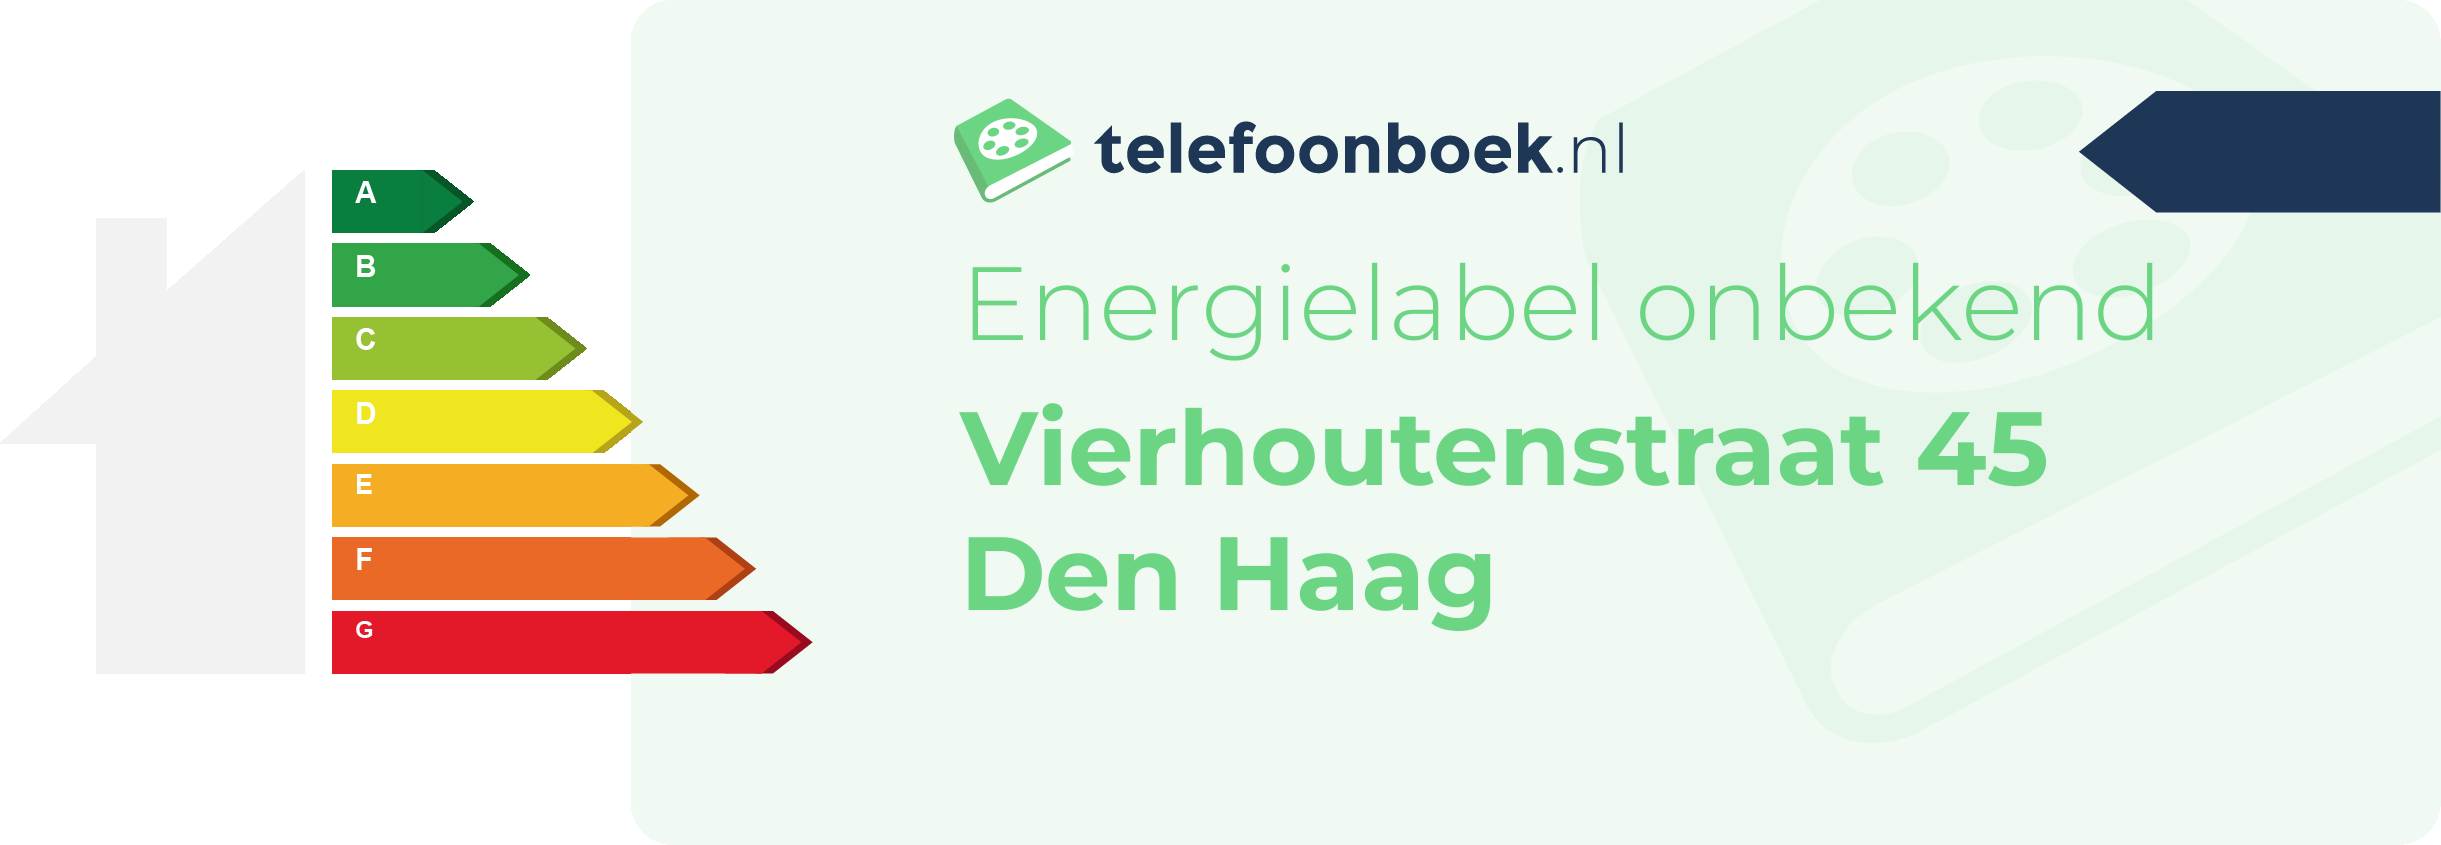 Energielabel Vierhoutenstraat 45 Den Haag